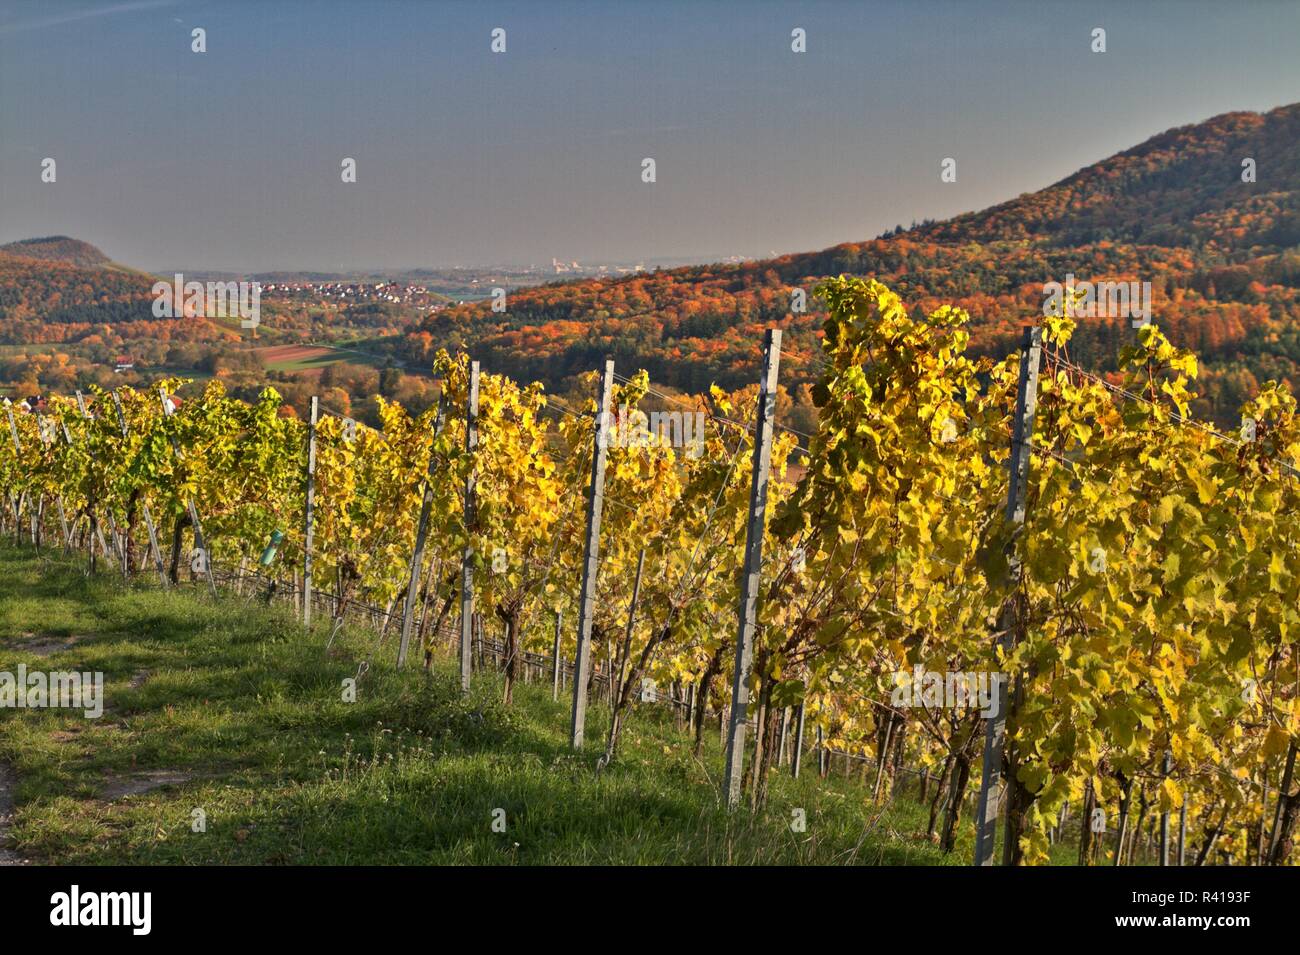 vineyards in autumn Stock Photo